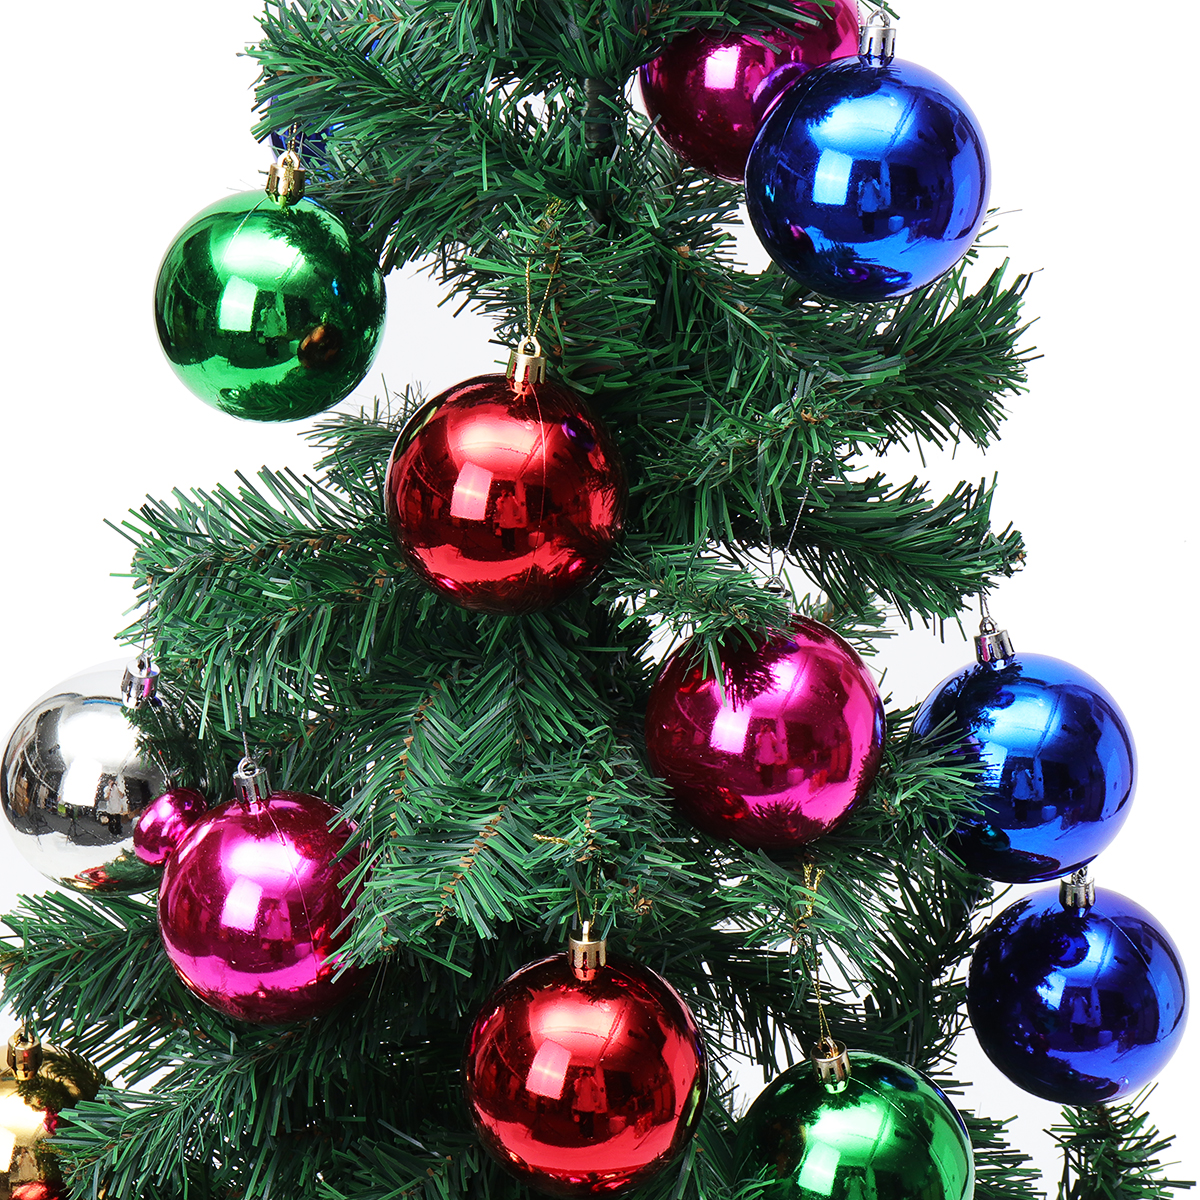 

24PCS С Рождеством Христовым Украшение Xmas Balls Ornaments Party Свадебное Gift